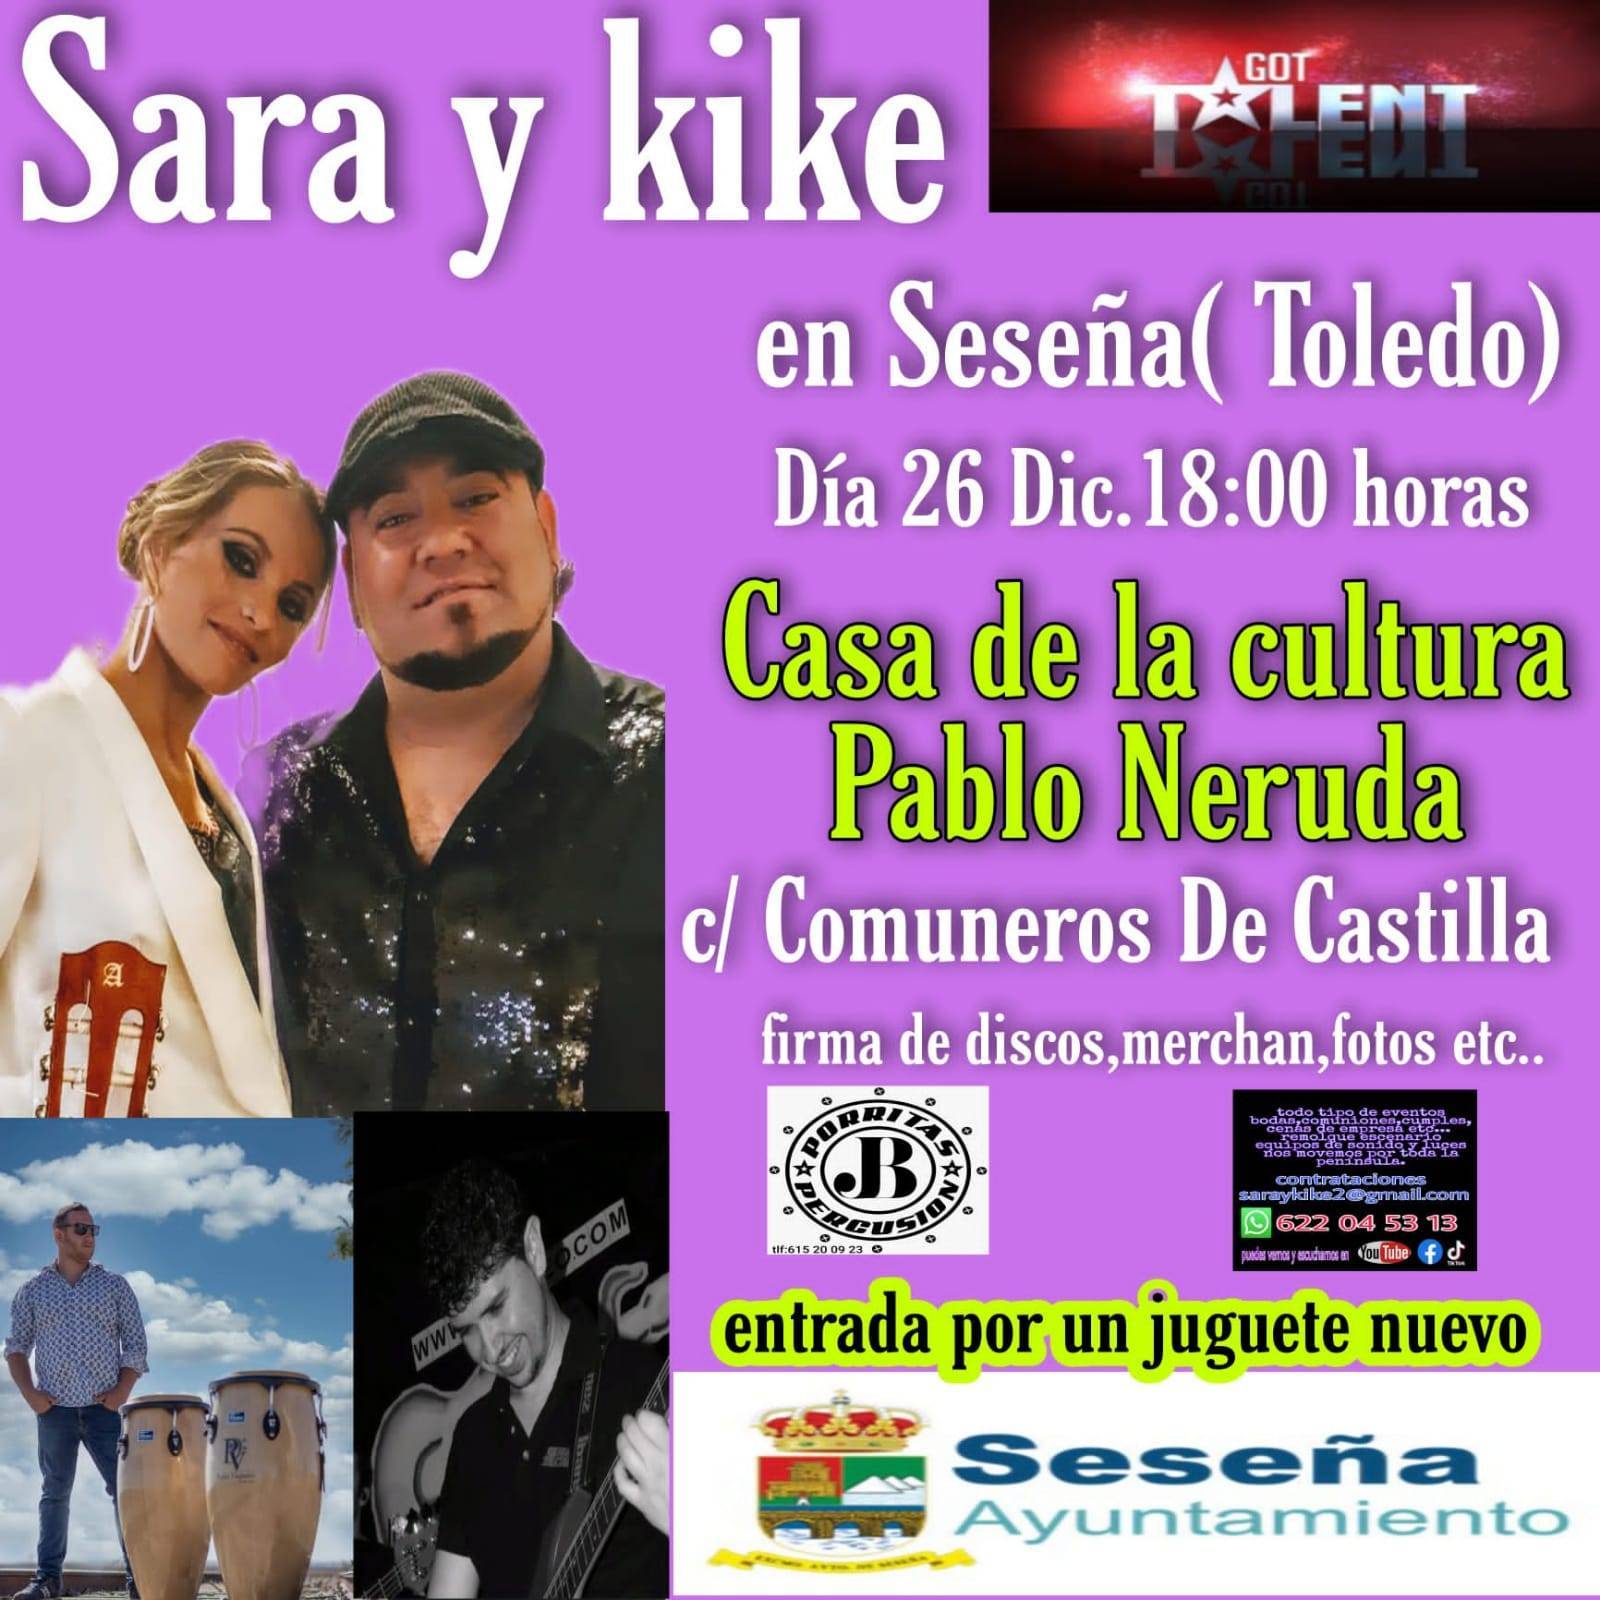 Concierto de Sara y Kike (2021) - Seseña (Toledo)